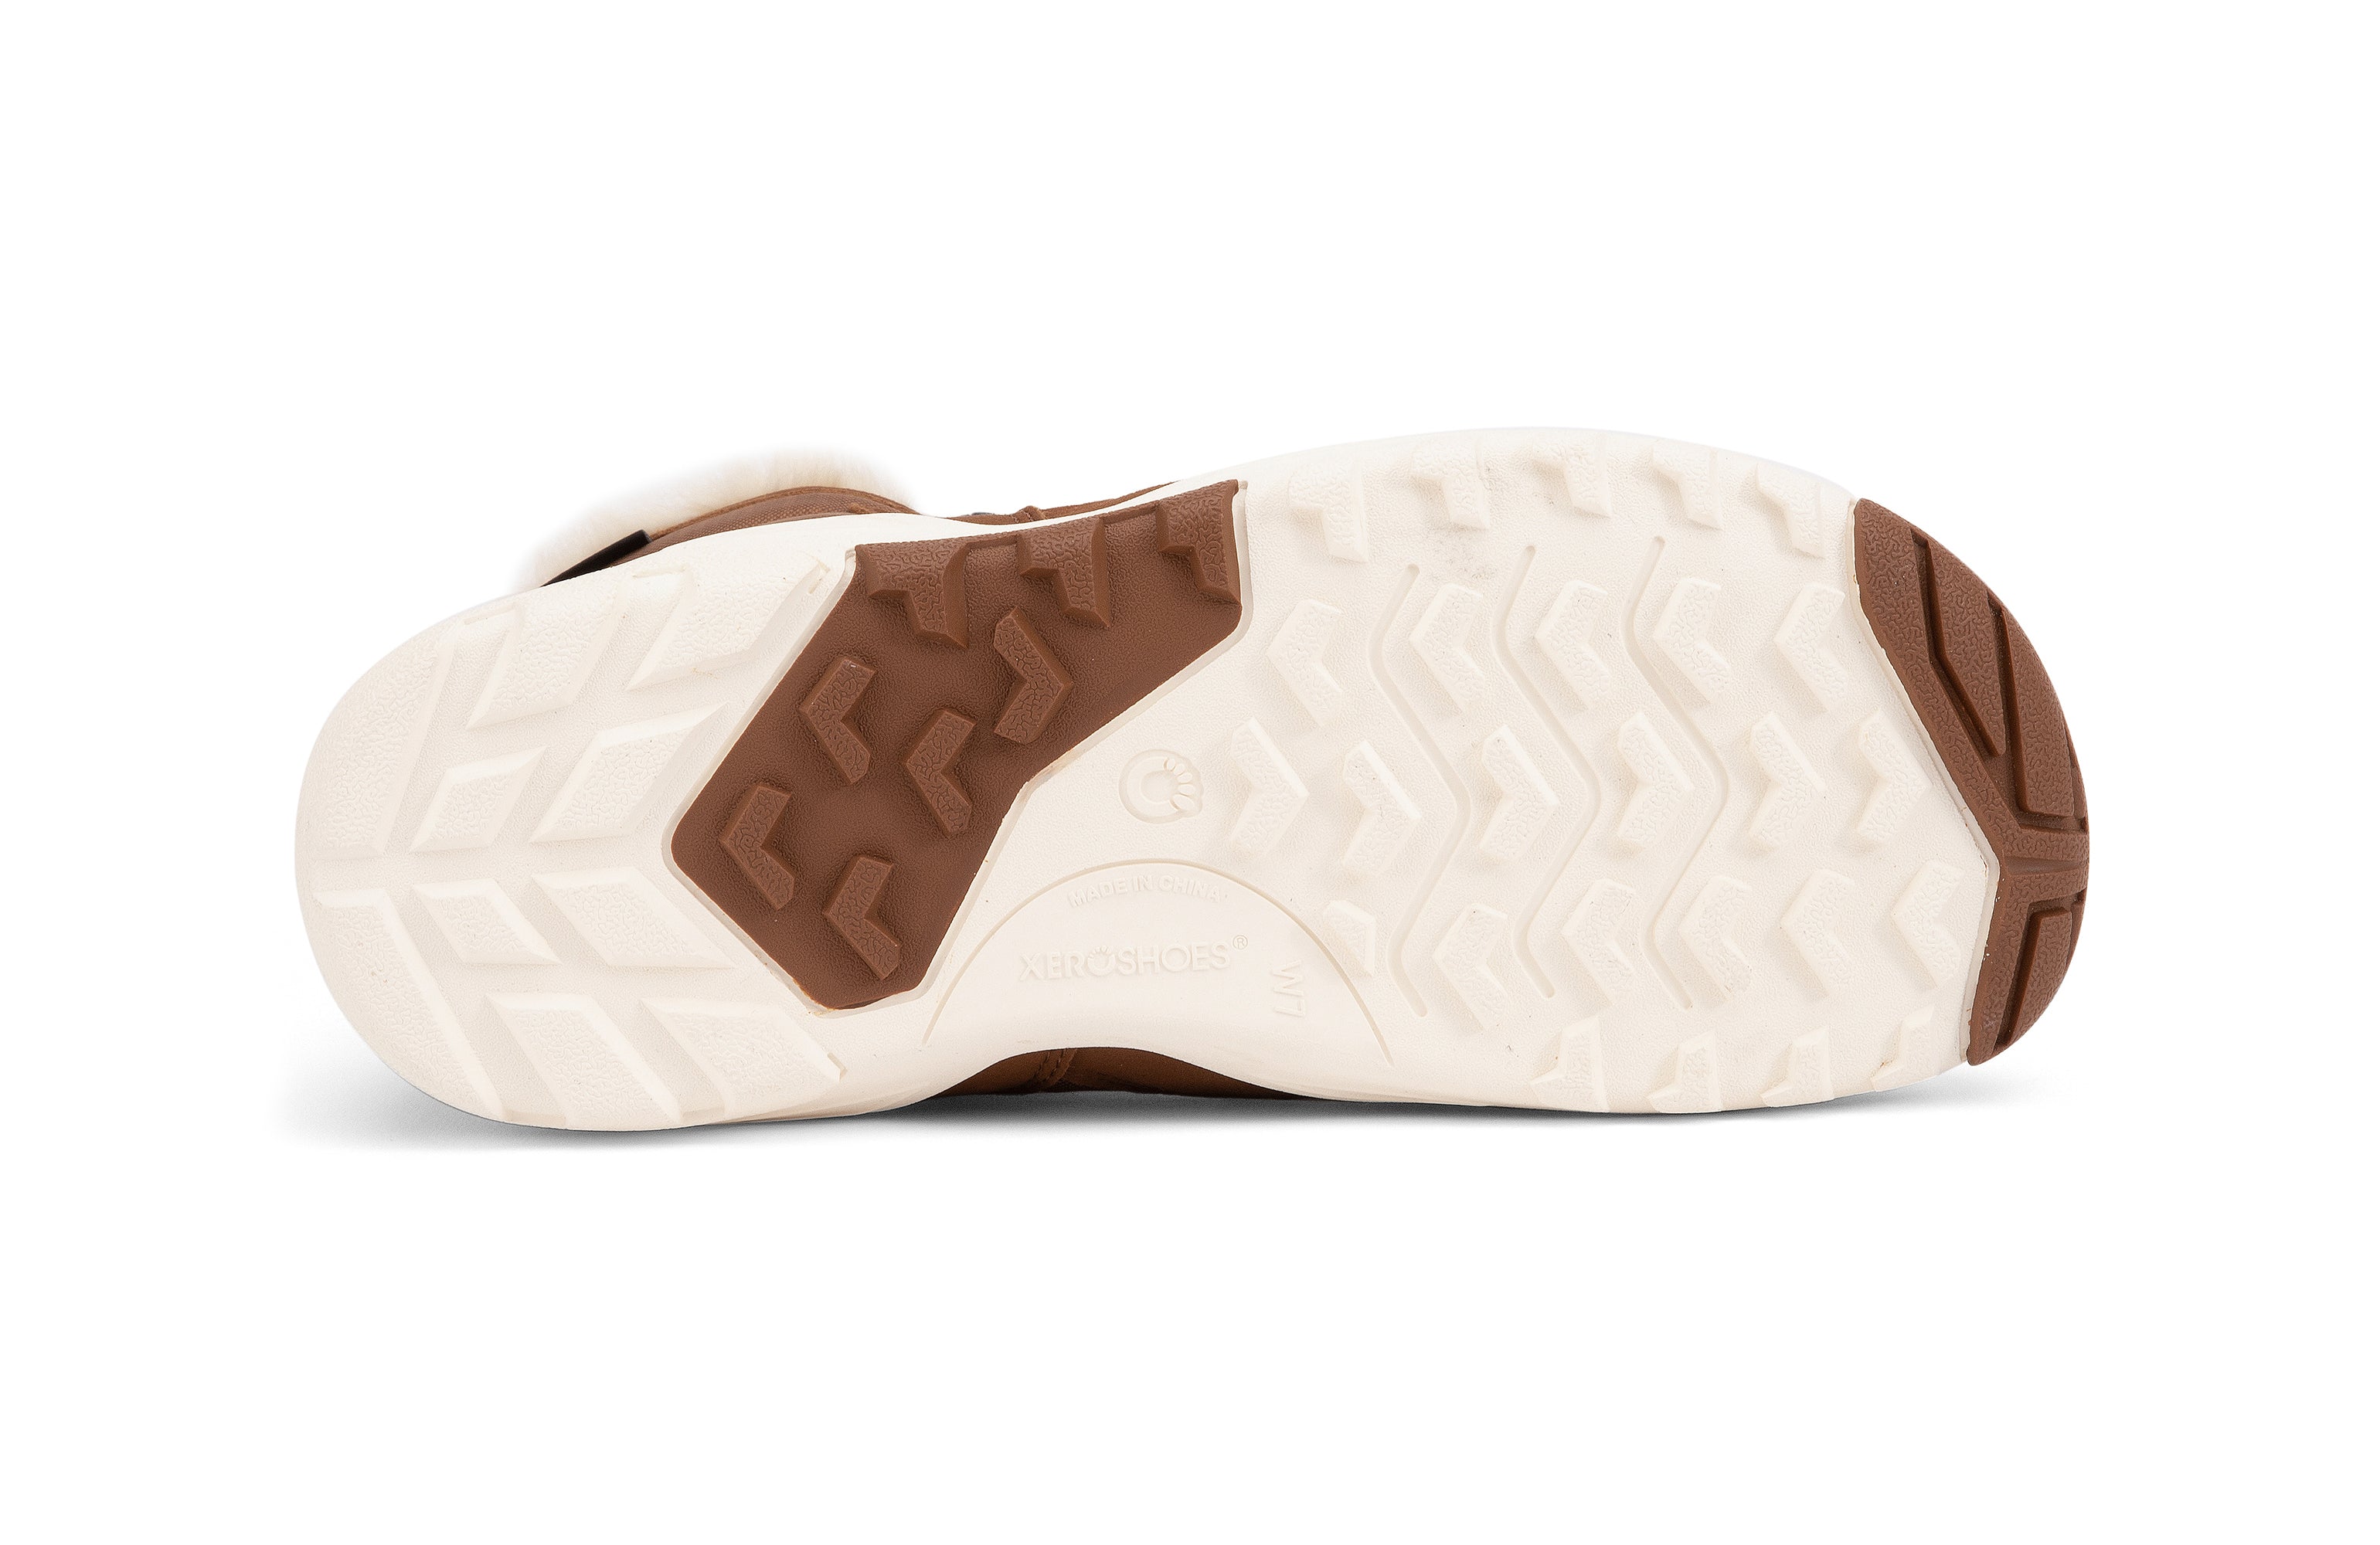 Xero Shoes Alpine Womens barfods vinterstøvler til kvinder i farven rubber brown / eggshell, saal